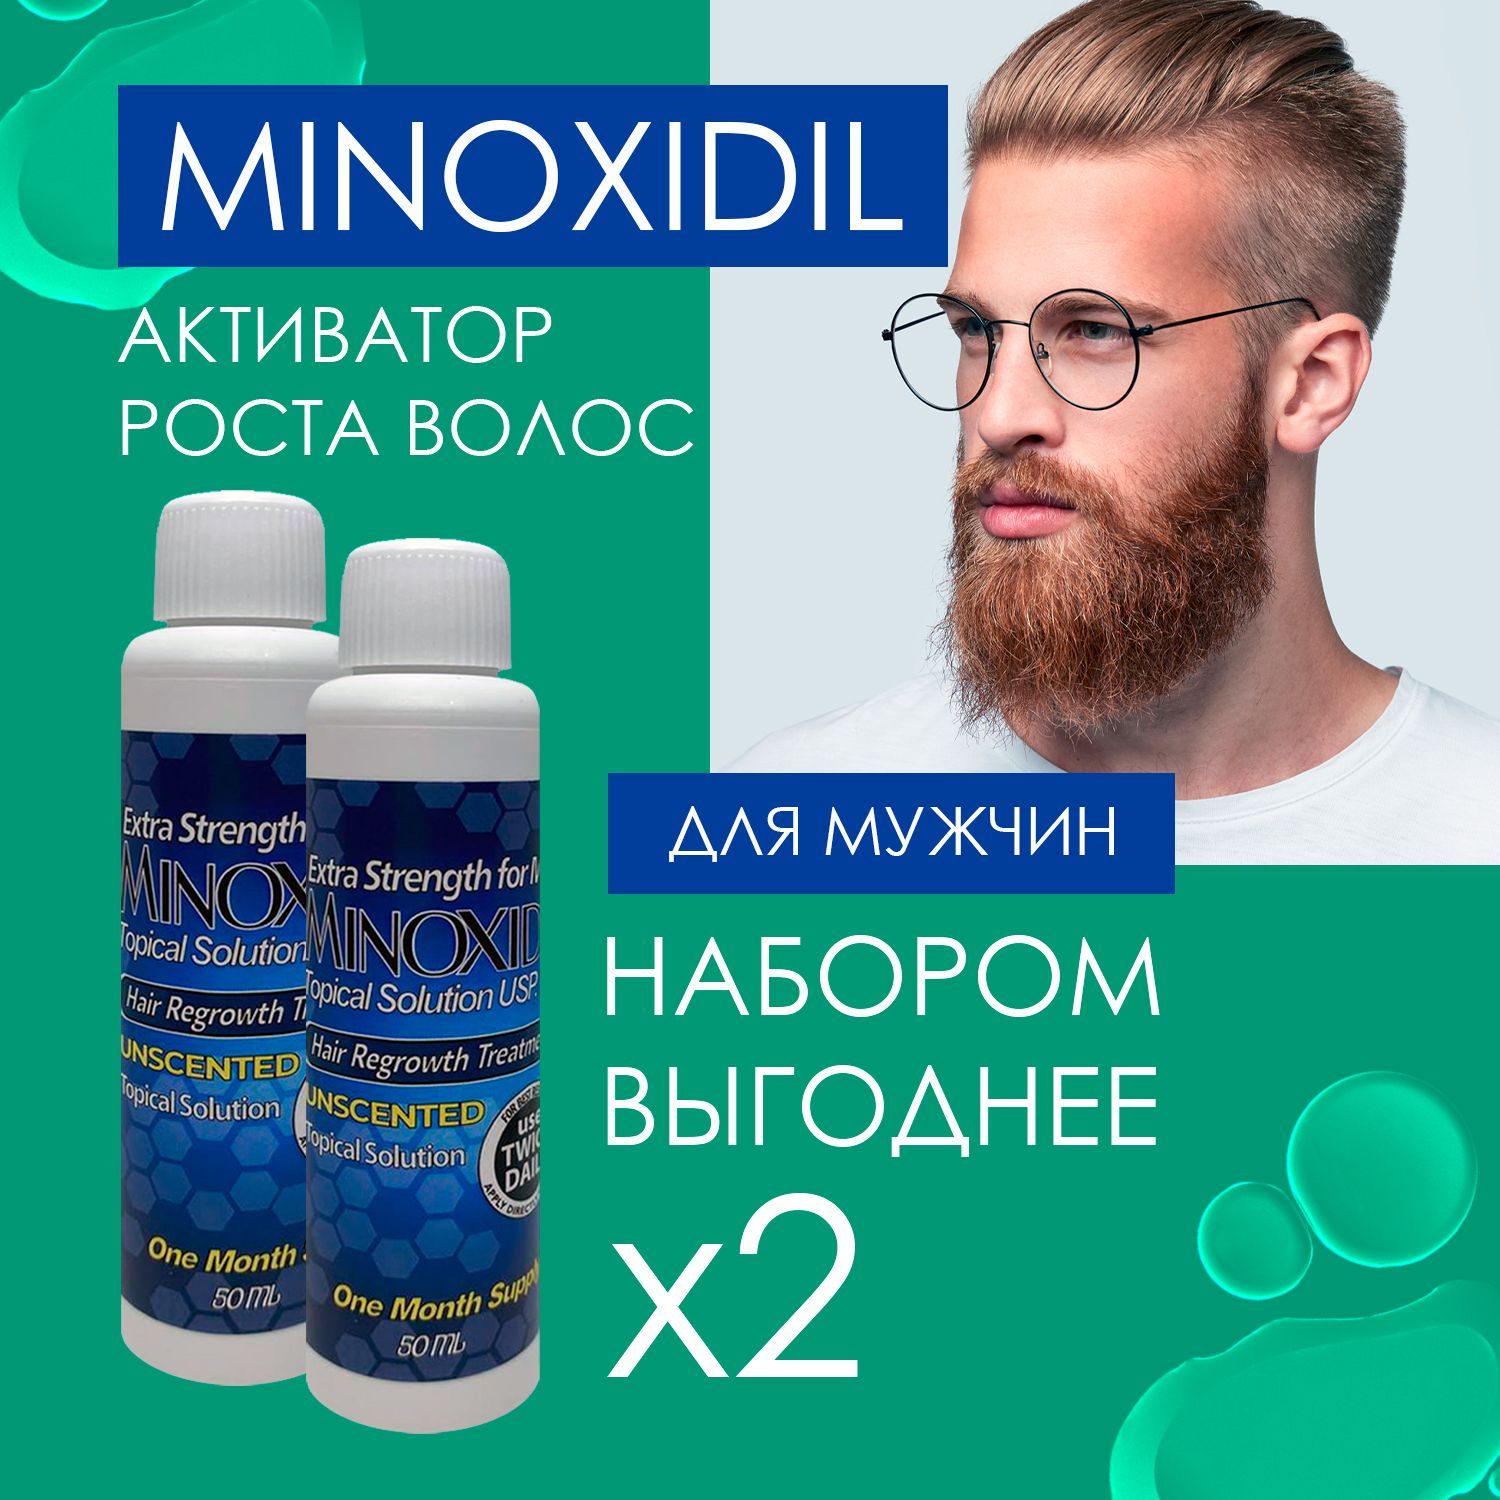 Активатор роста бороды. Minoxidil va rolik.